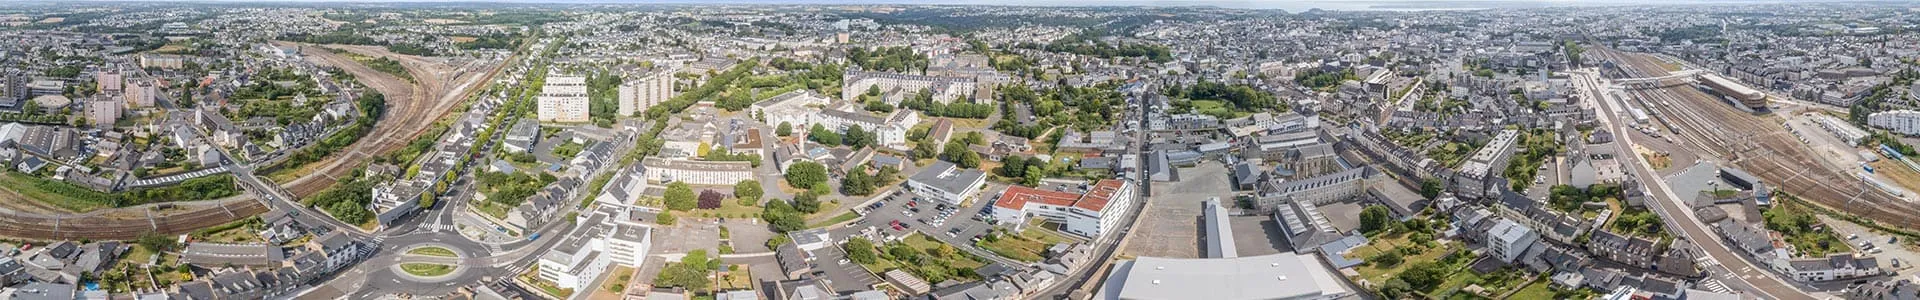 Vue aérienne du quartier autour de la résidence Le Clos d'Armor